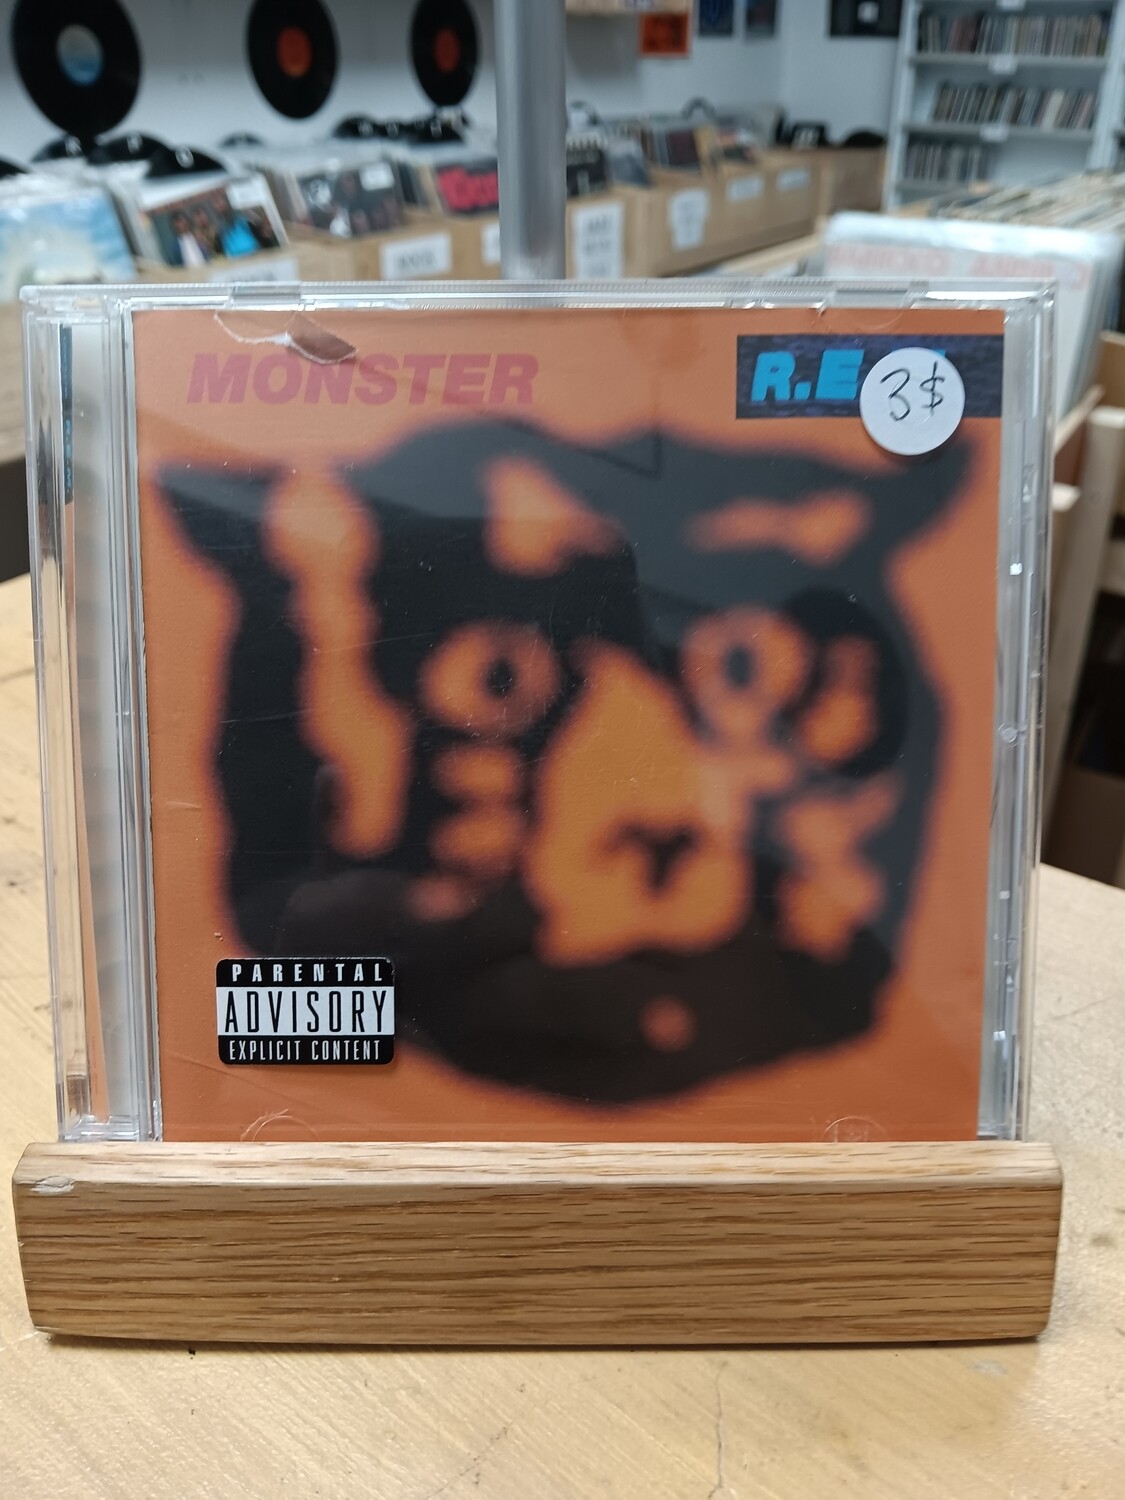 R.E.M. - Monster (CD)